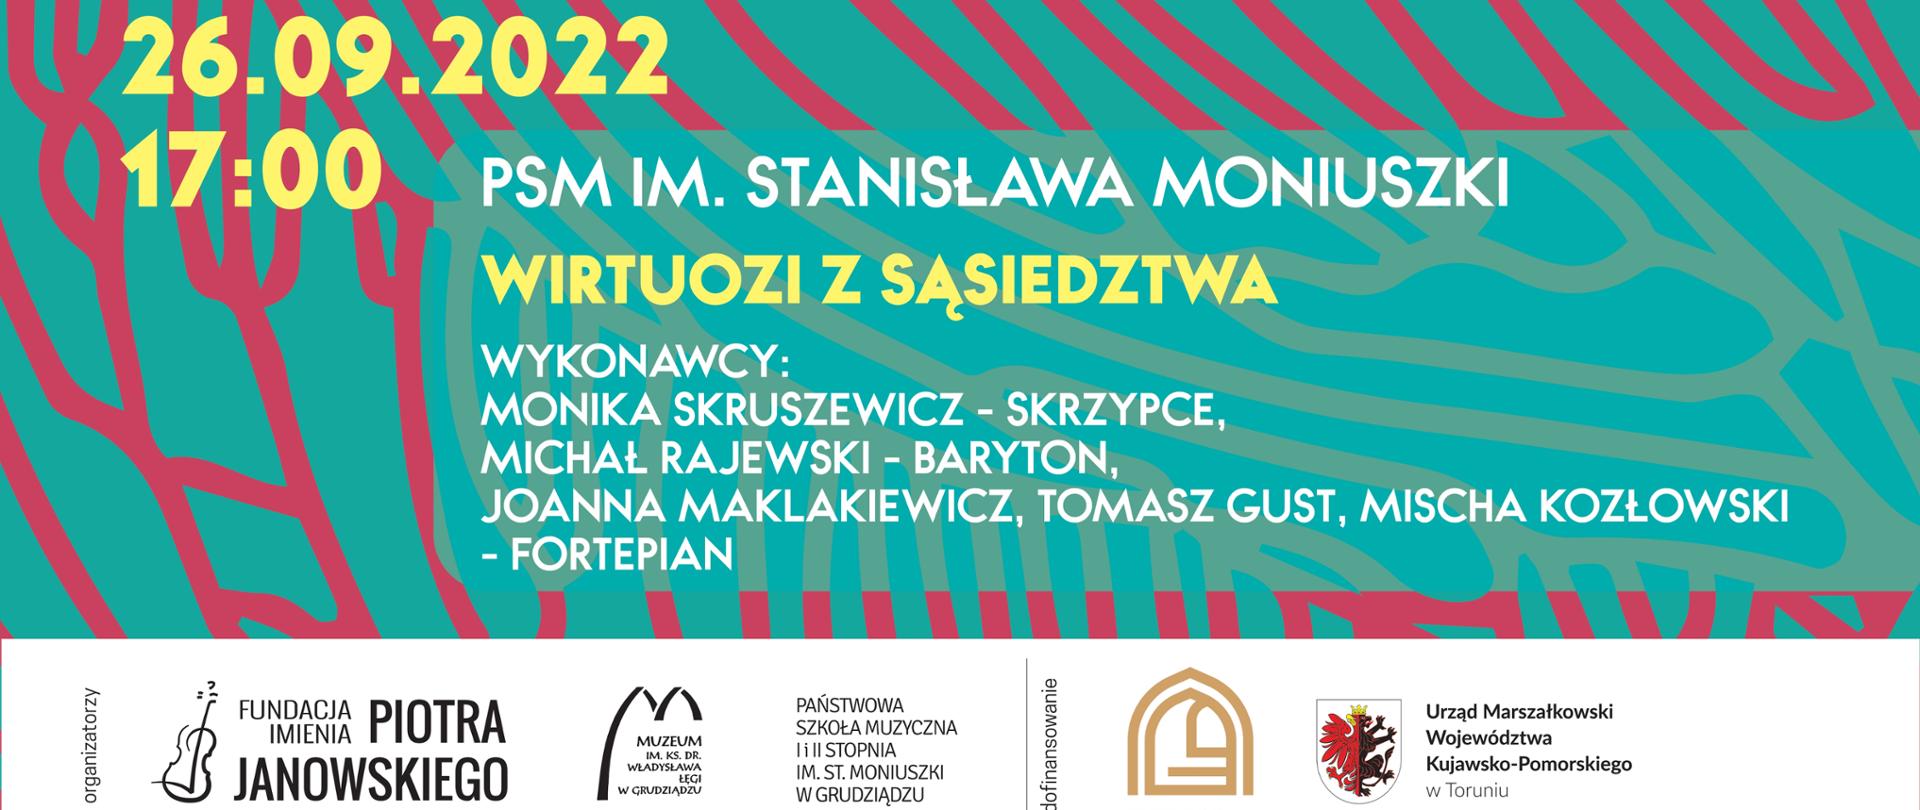 Kolorowy plakat z informacjami o koncertach w ramach festiwalu. na dole logo organizatorów